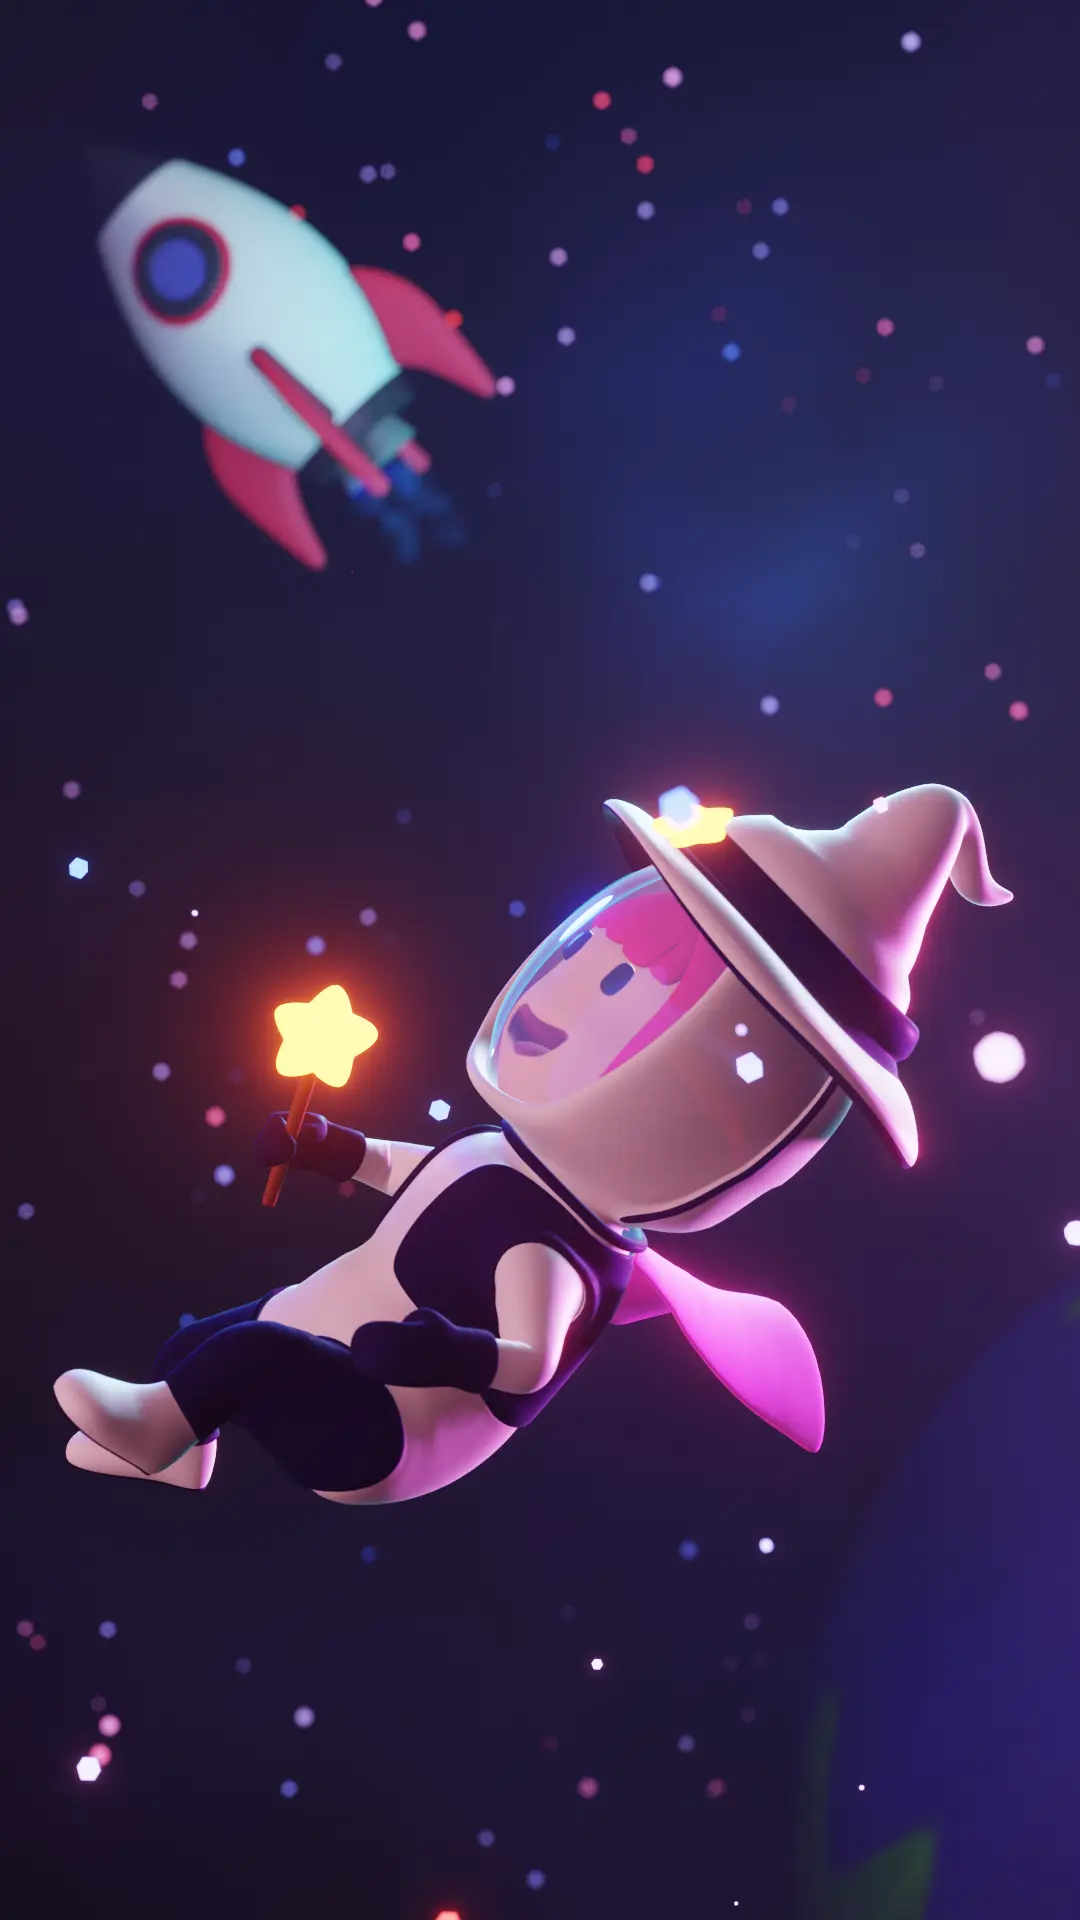 Banner da nossa mascote no espaço, vestindo seu traje de astronauta e usando um grande chapéu de mago. Ela está olhando para as estrelas e sorrindo.